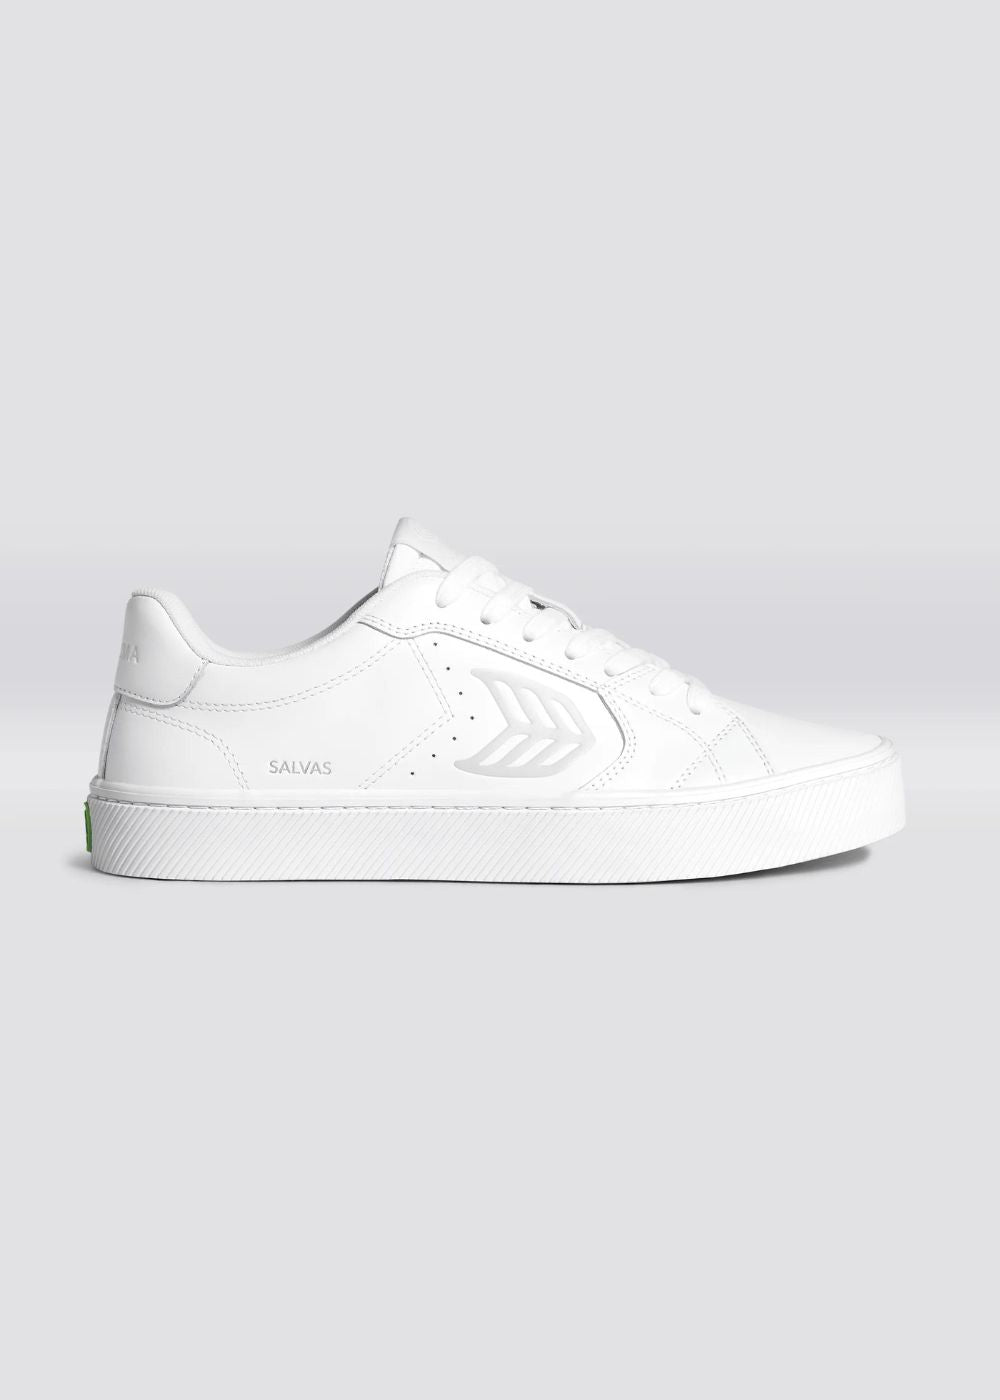 SALVAS White Leather Sneaker